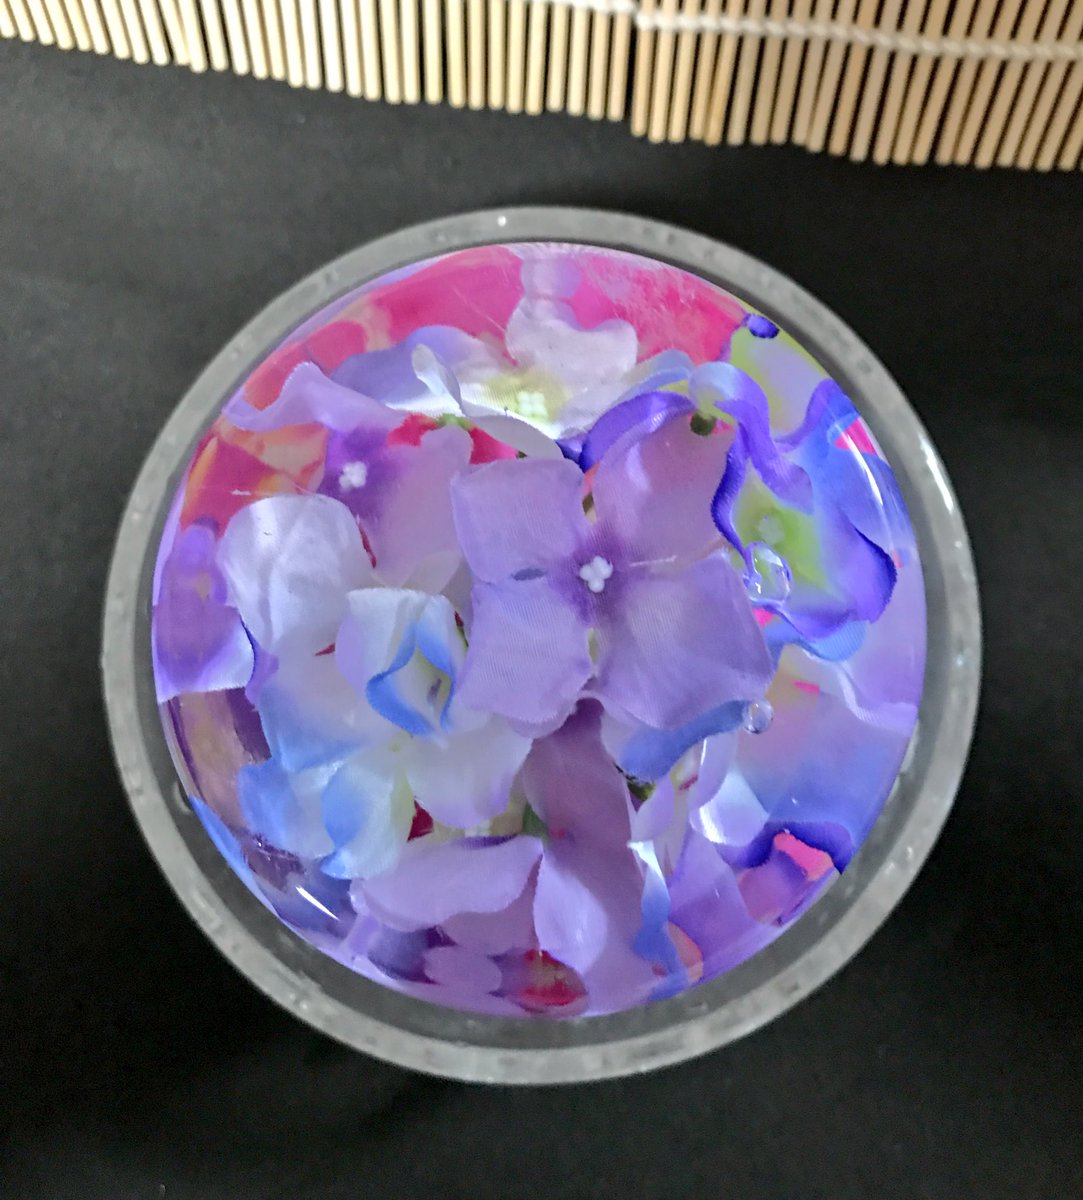 卯月かりん 筋さに 氷中花の記録 今年も氷中花作りました 六月なので定番紫陽花 百均の造花とタッパーです 朝顔も作りたいなぁ